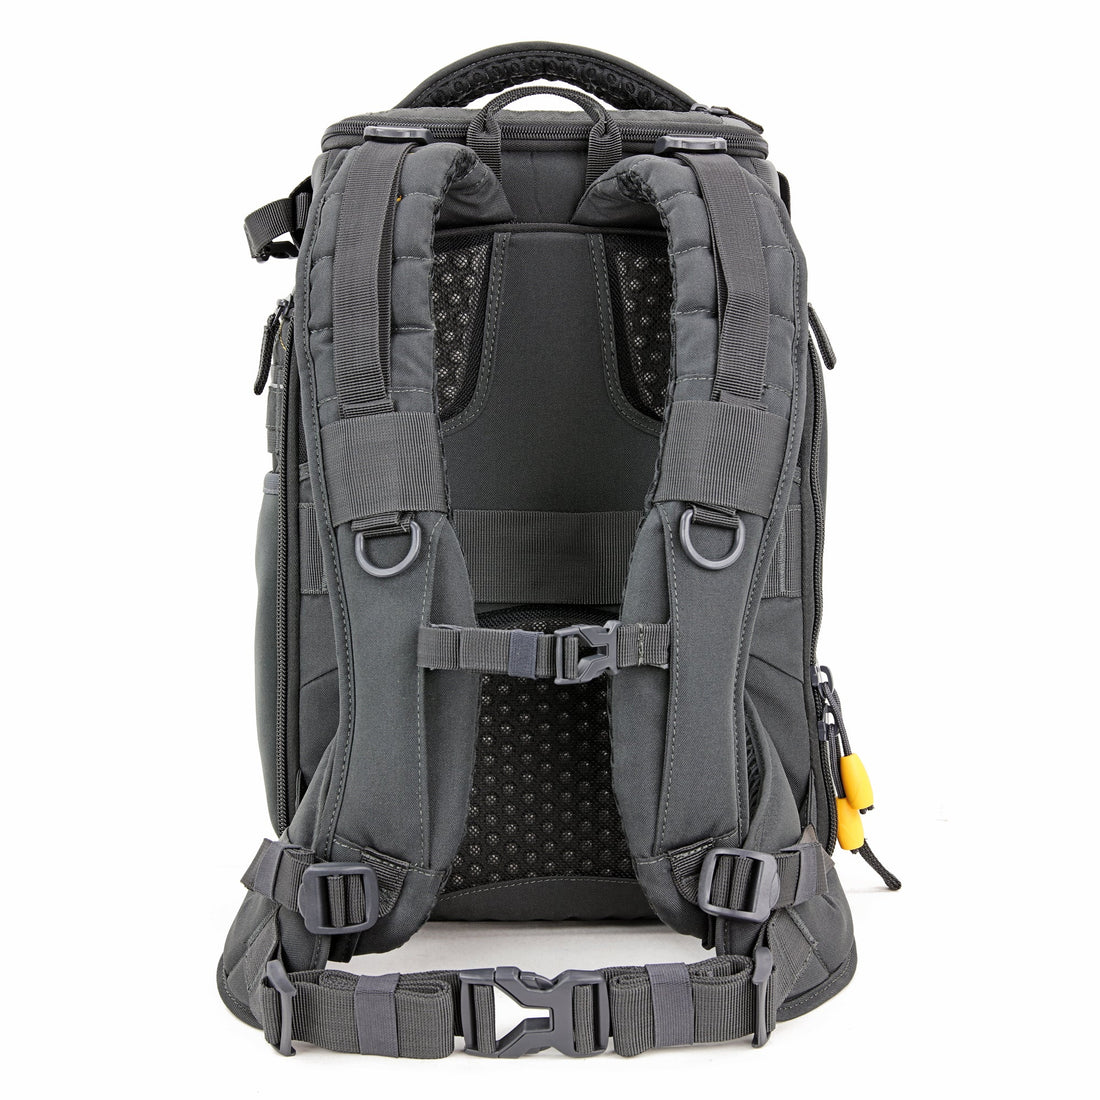 Vanguard Alta Sky 45D Rear Access Professional Camera Backpack-Black &amp; Grey